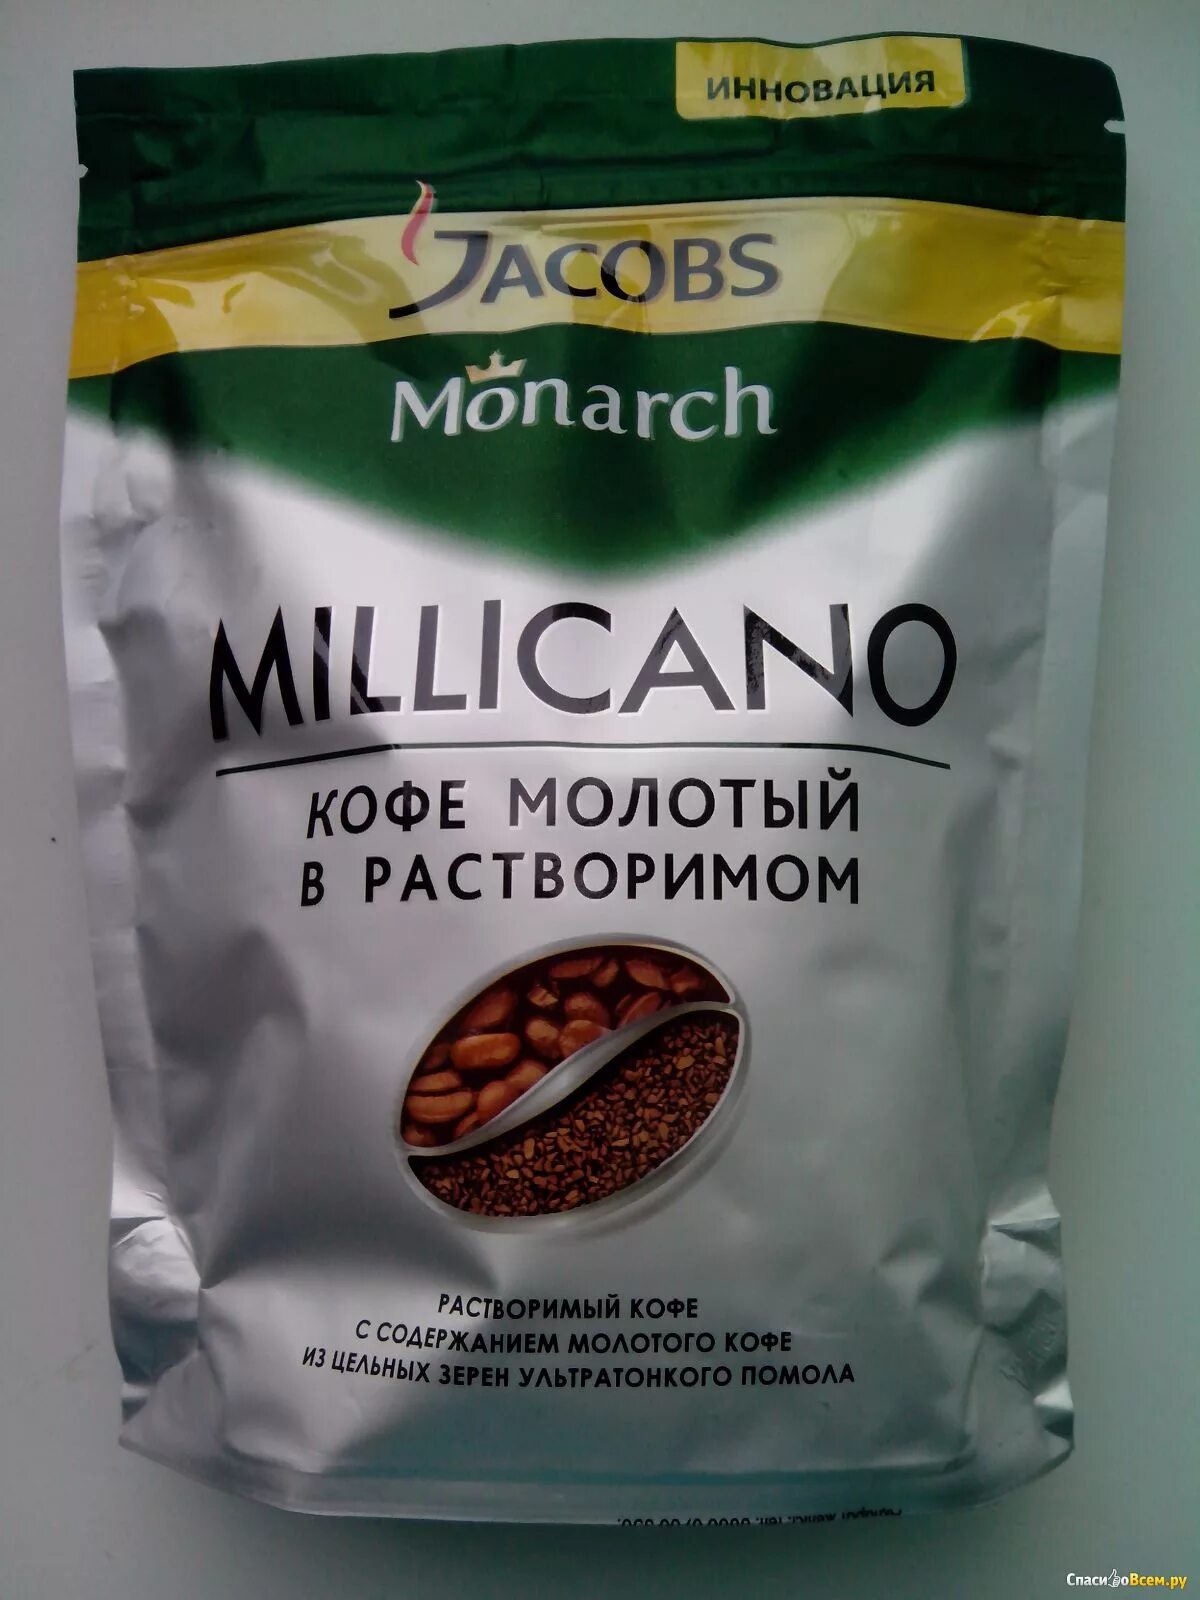 Марки кофе Якобс Миликано. Монарх кофе молотый в растворимом. Кофе Якобс Миликано в зернах. Кофе растворимый кофе молотый Якобс. Растворимый или молотый кофе лучше